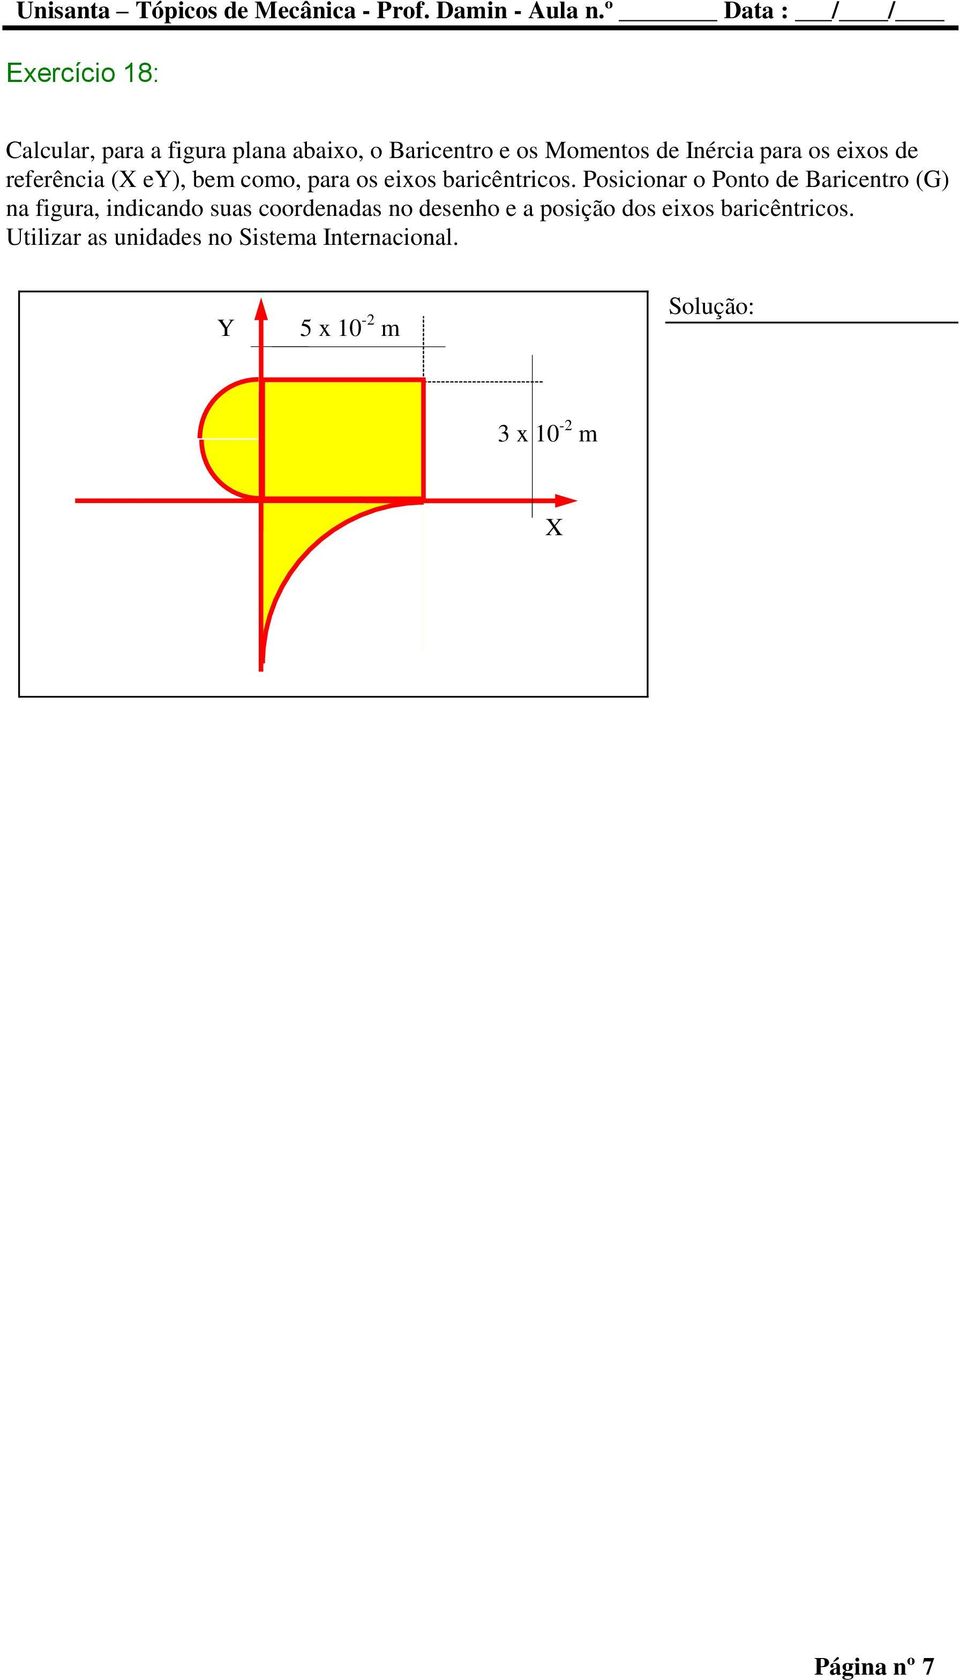 Posicionar o Ponto de Baricentro (G) na figura, indicando suas coordenadas no desenho e a